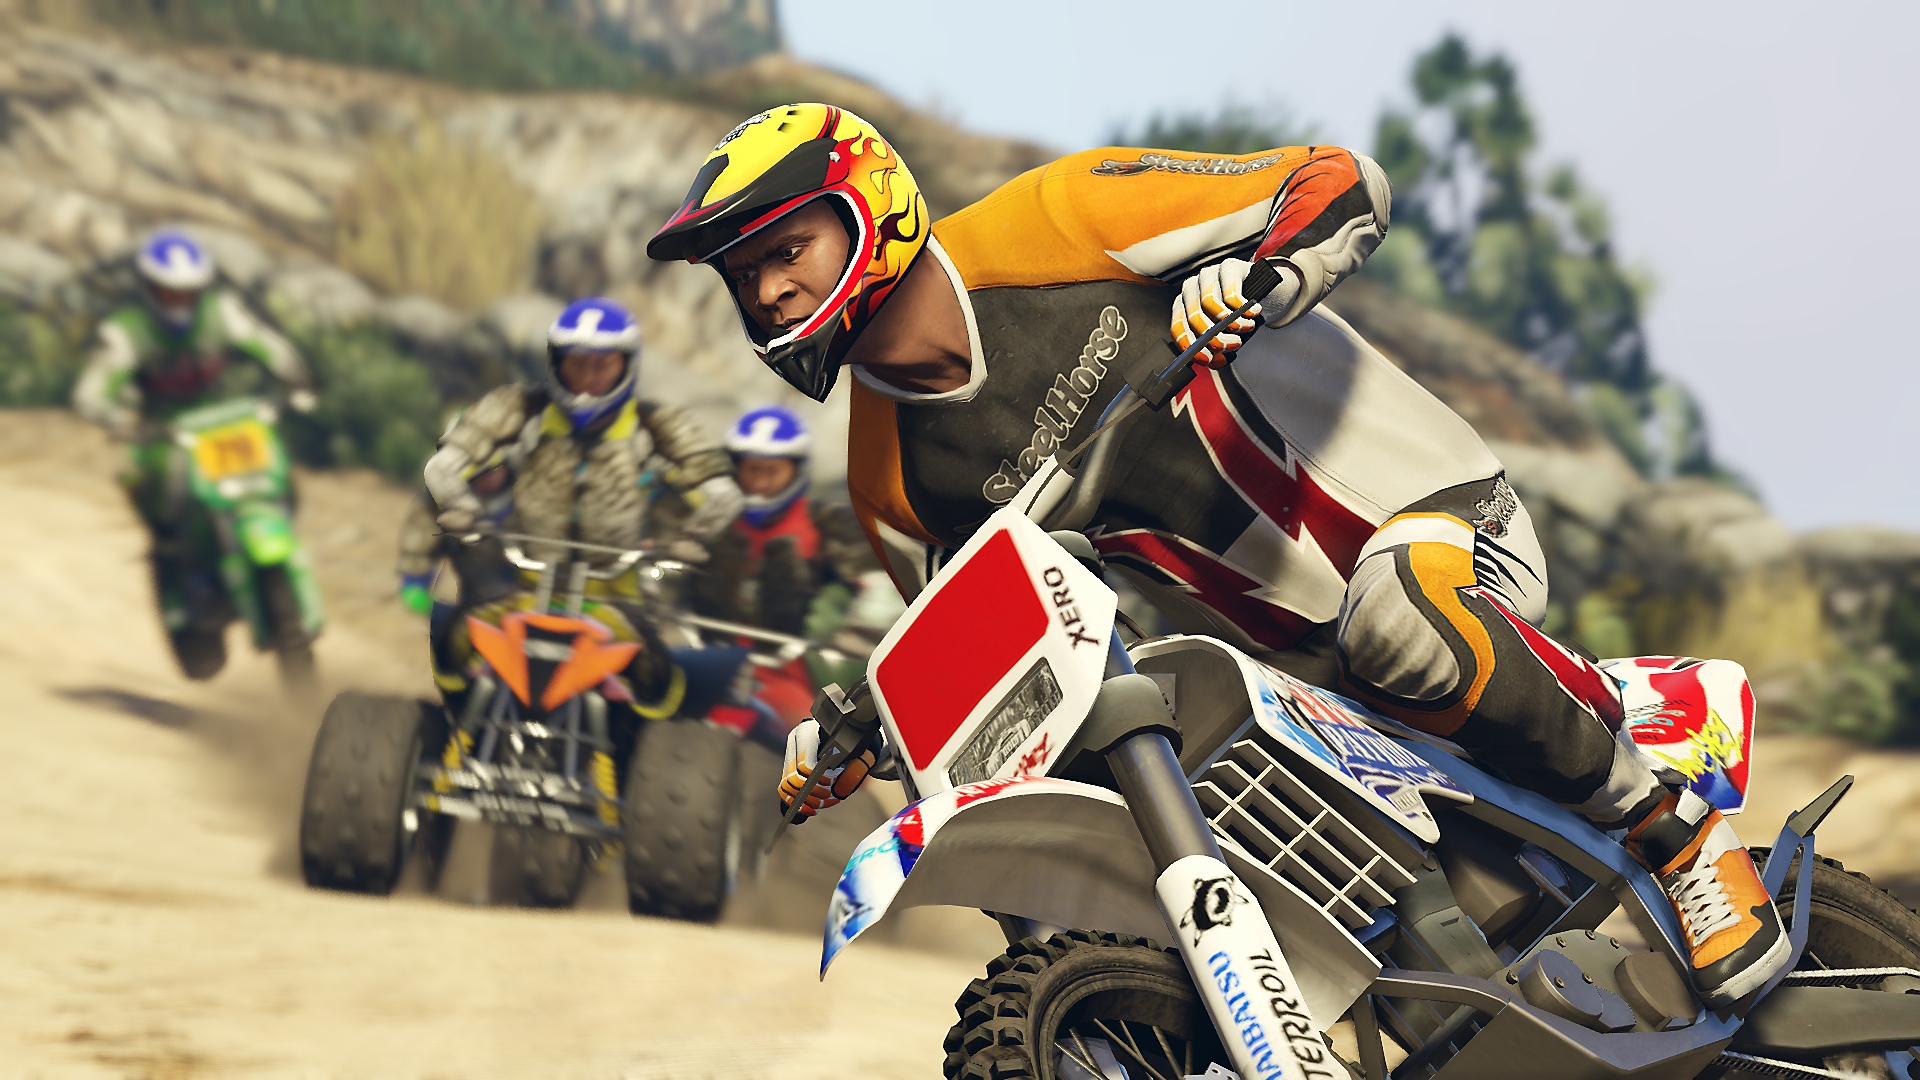 《Grand Theft Auto V》螢幕截圖，顯示要角富蘭克林騎著越野機車跟騎四輪機車的其他人競速